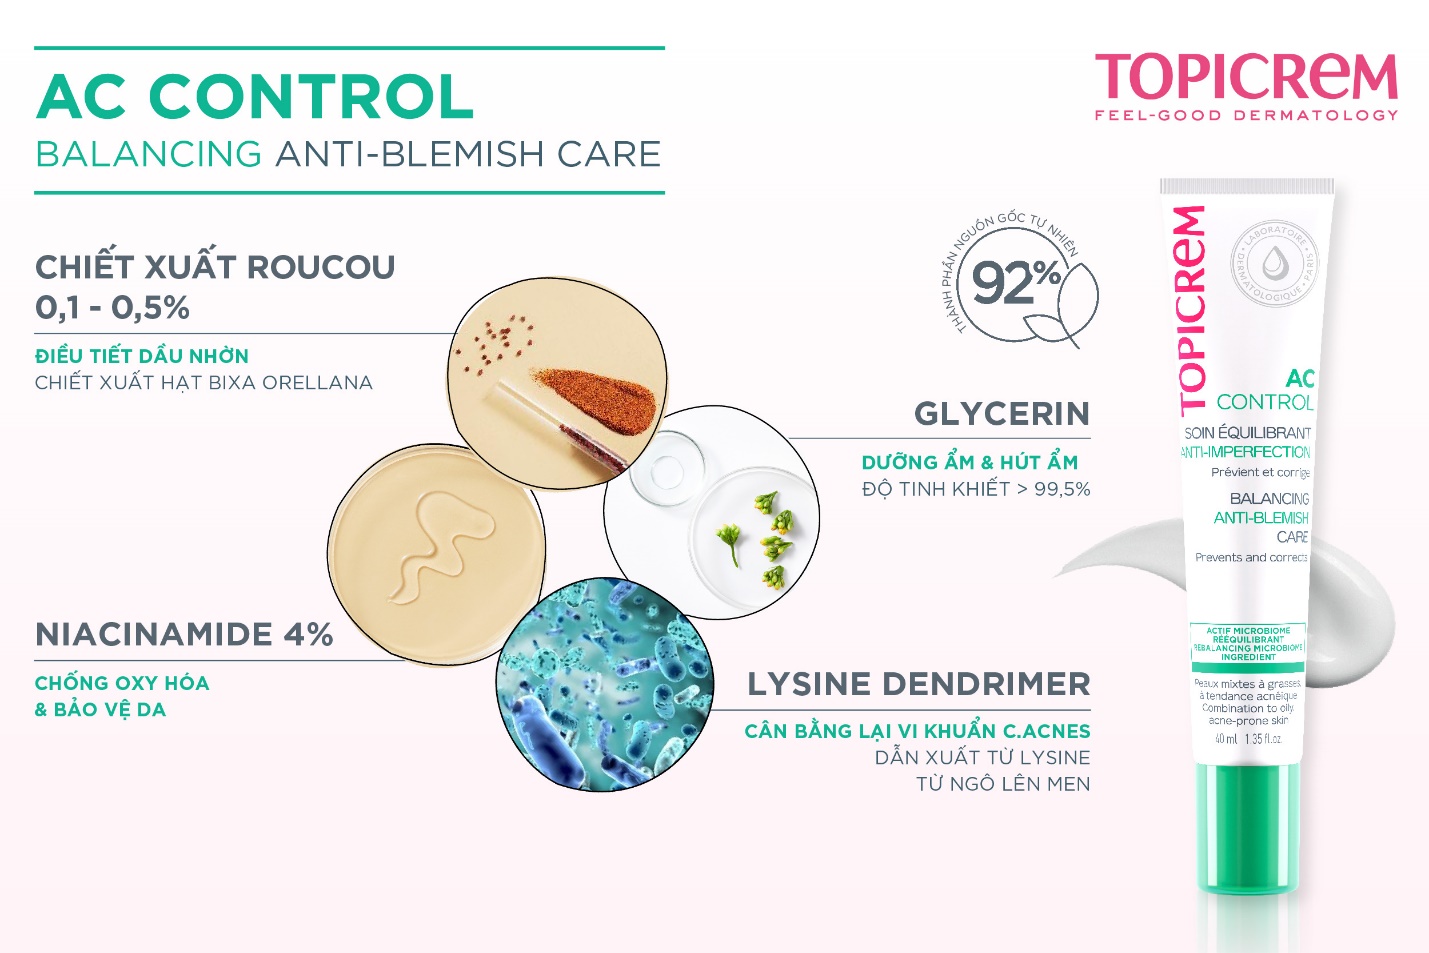 Phức hợp cân bằng hệ vi sinh và duy trì làn da khỏe mạnh cùng TOPICREM AC Control Balancing Anti-Blemish Care